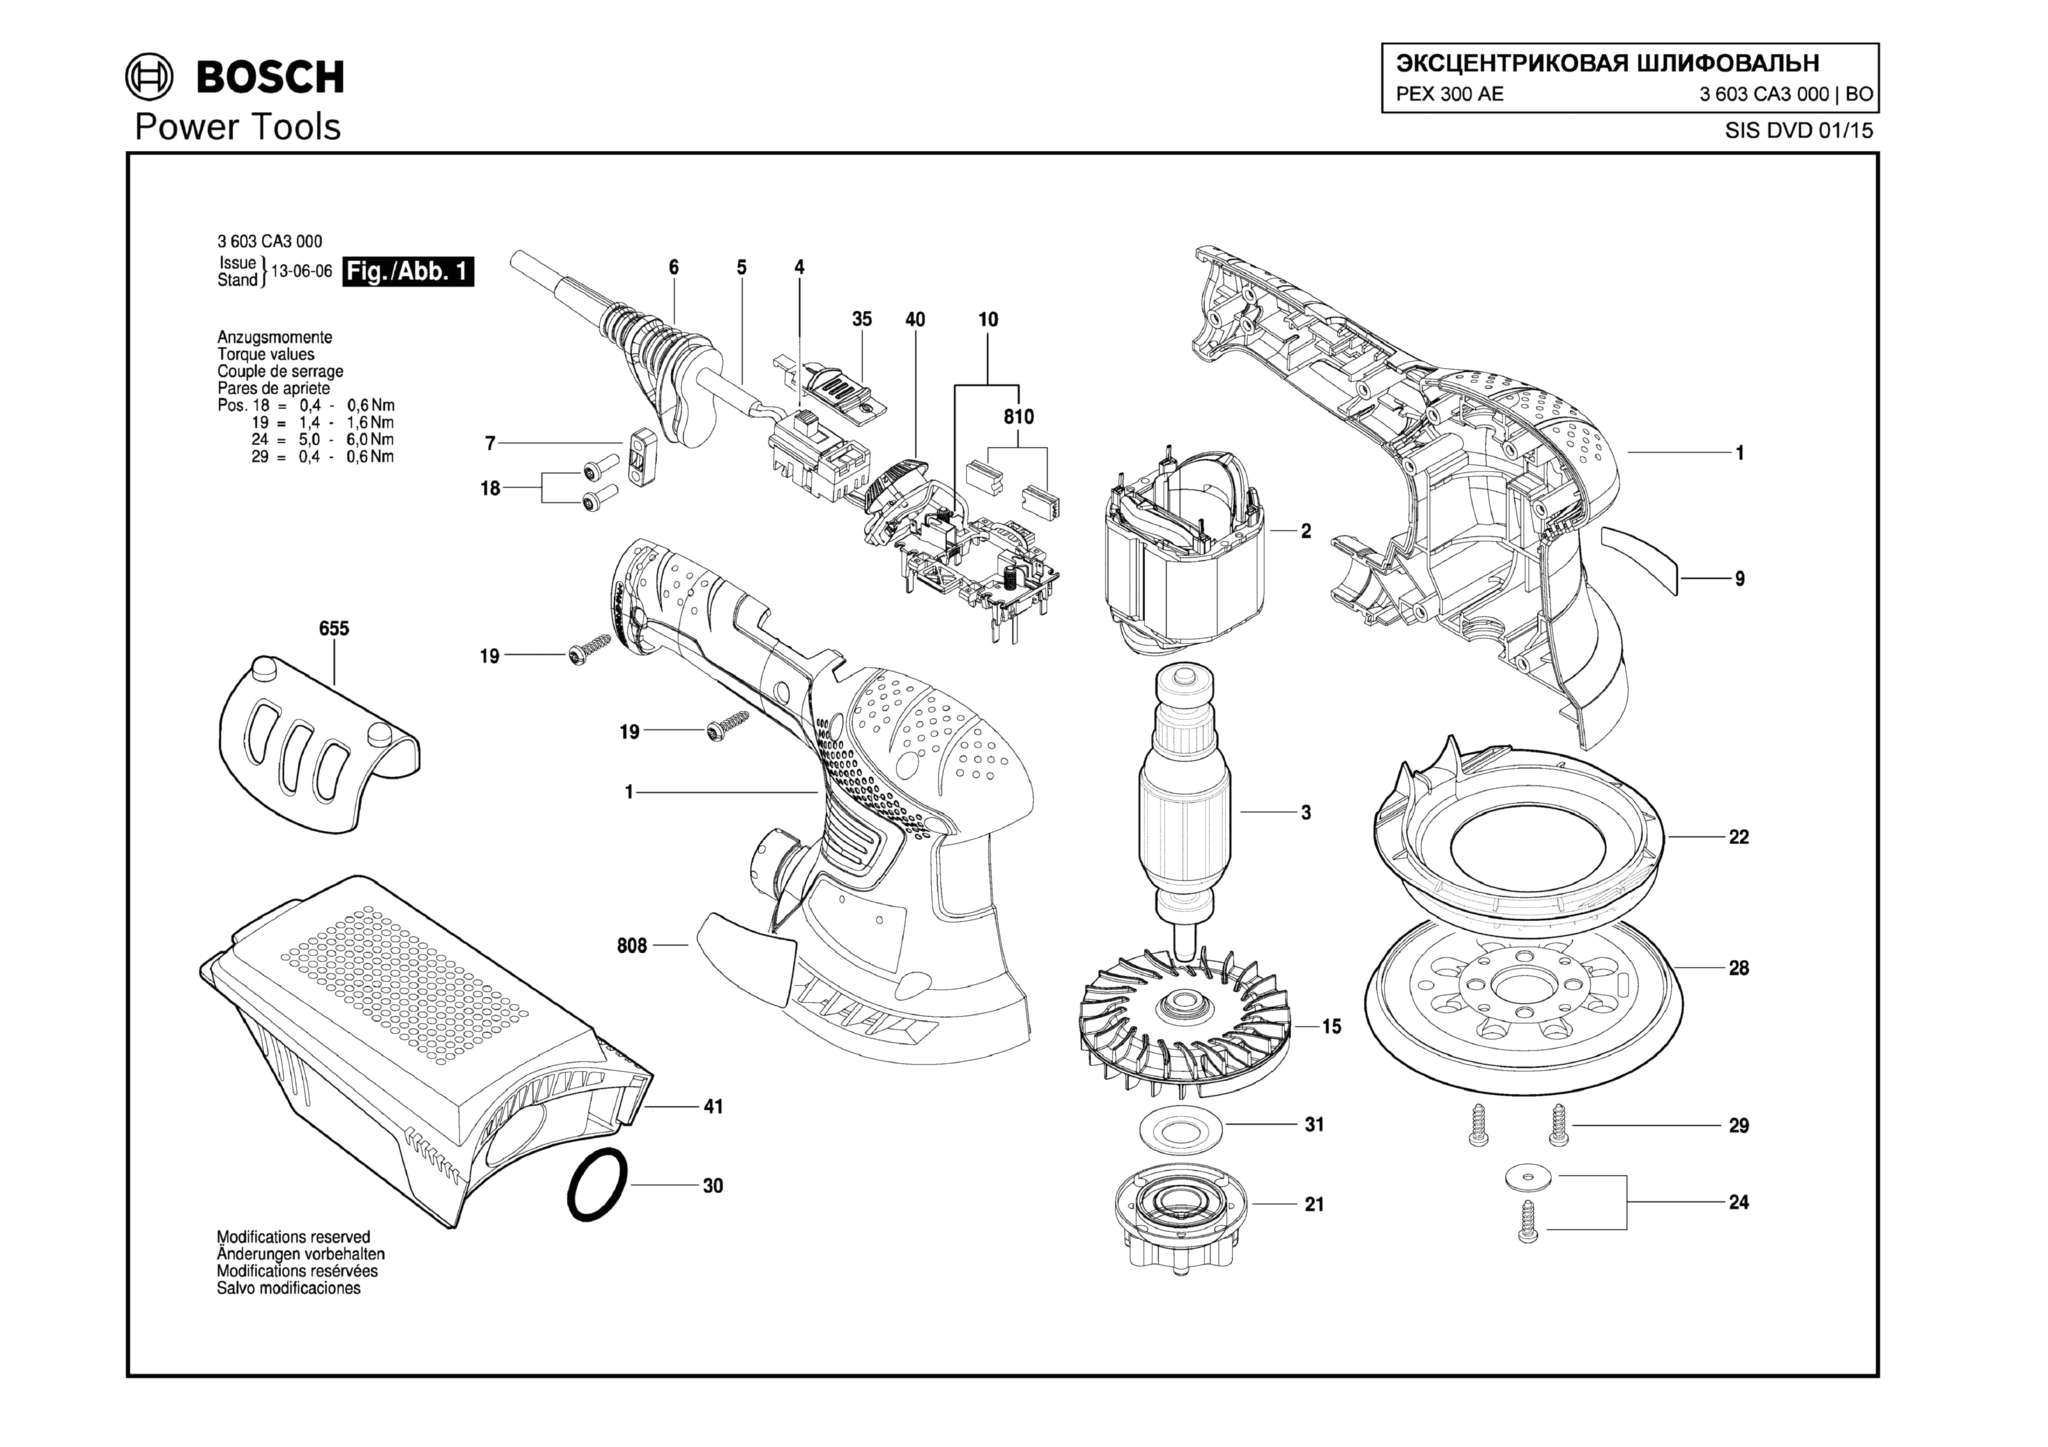 Запчасти, схема и деталировка Bosch PEX 300 AE (ТИП 3603CA3000)